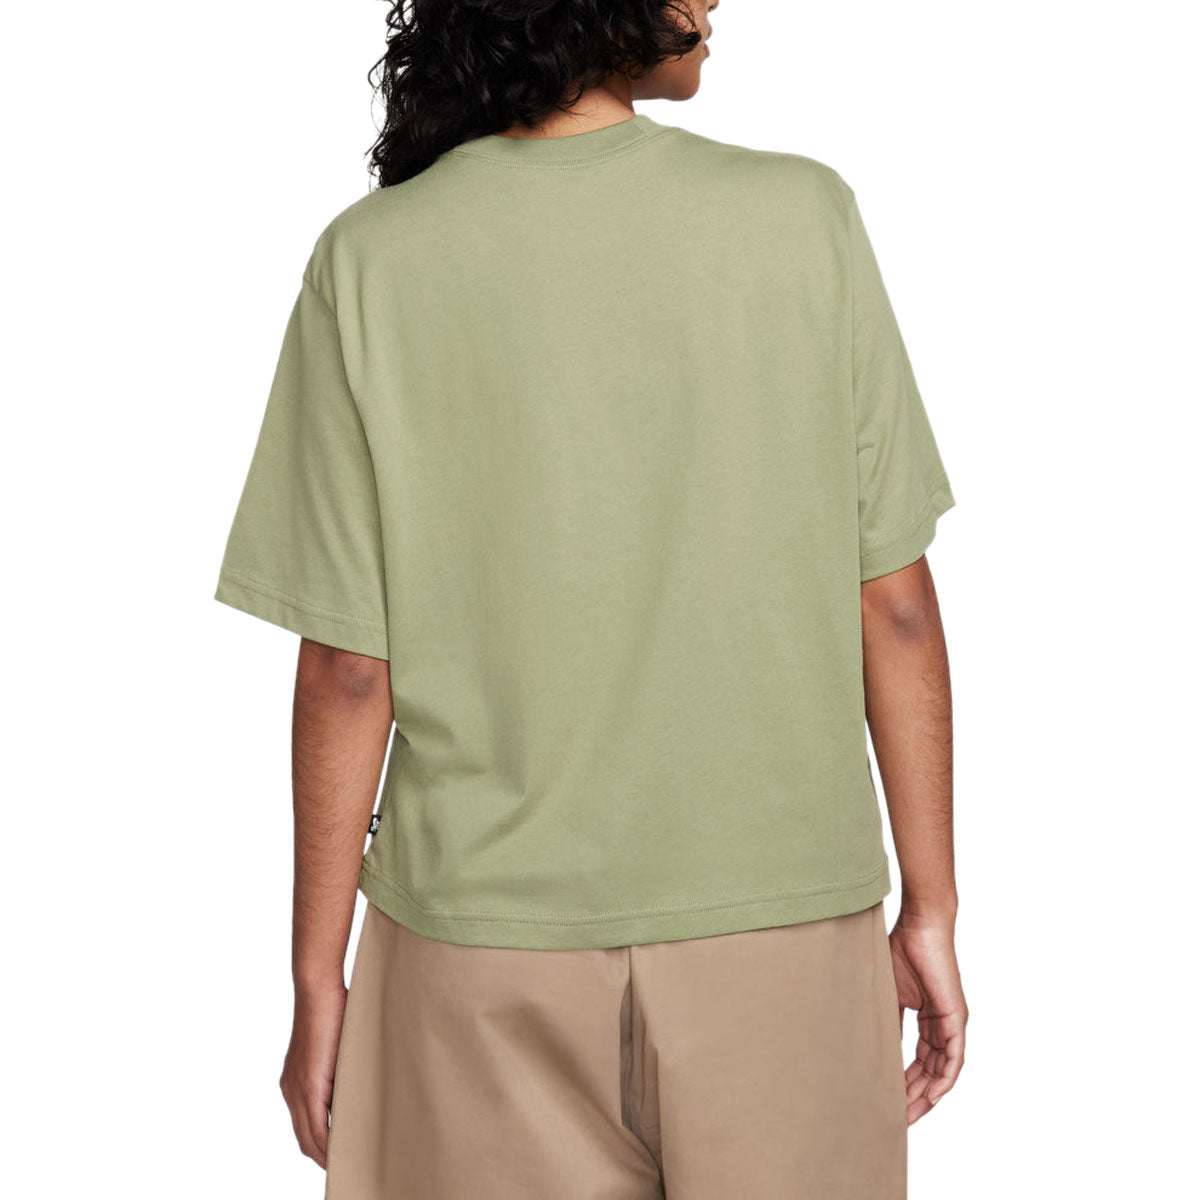 Nike SB Skate Outline T-Shirt - Oil Green image 2